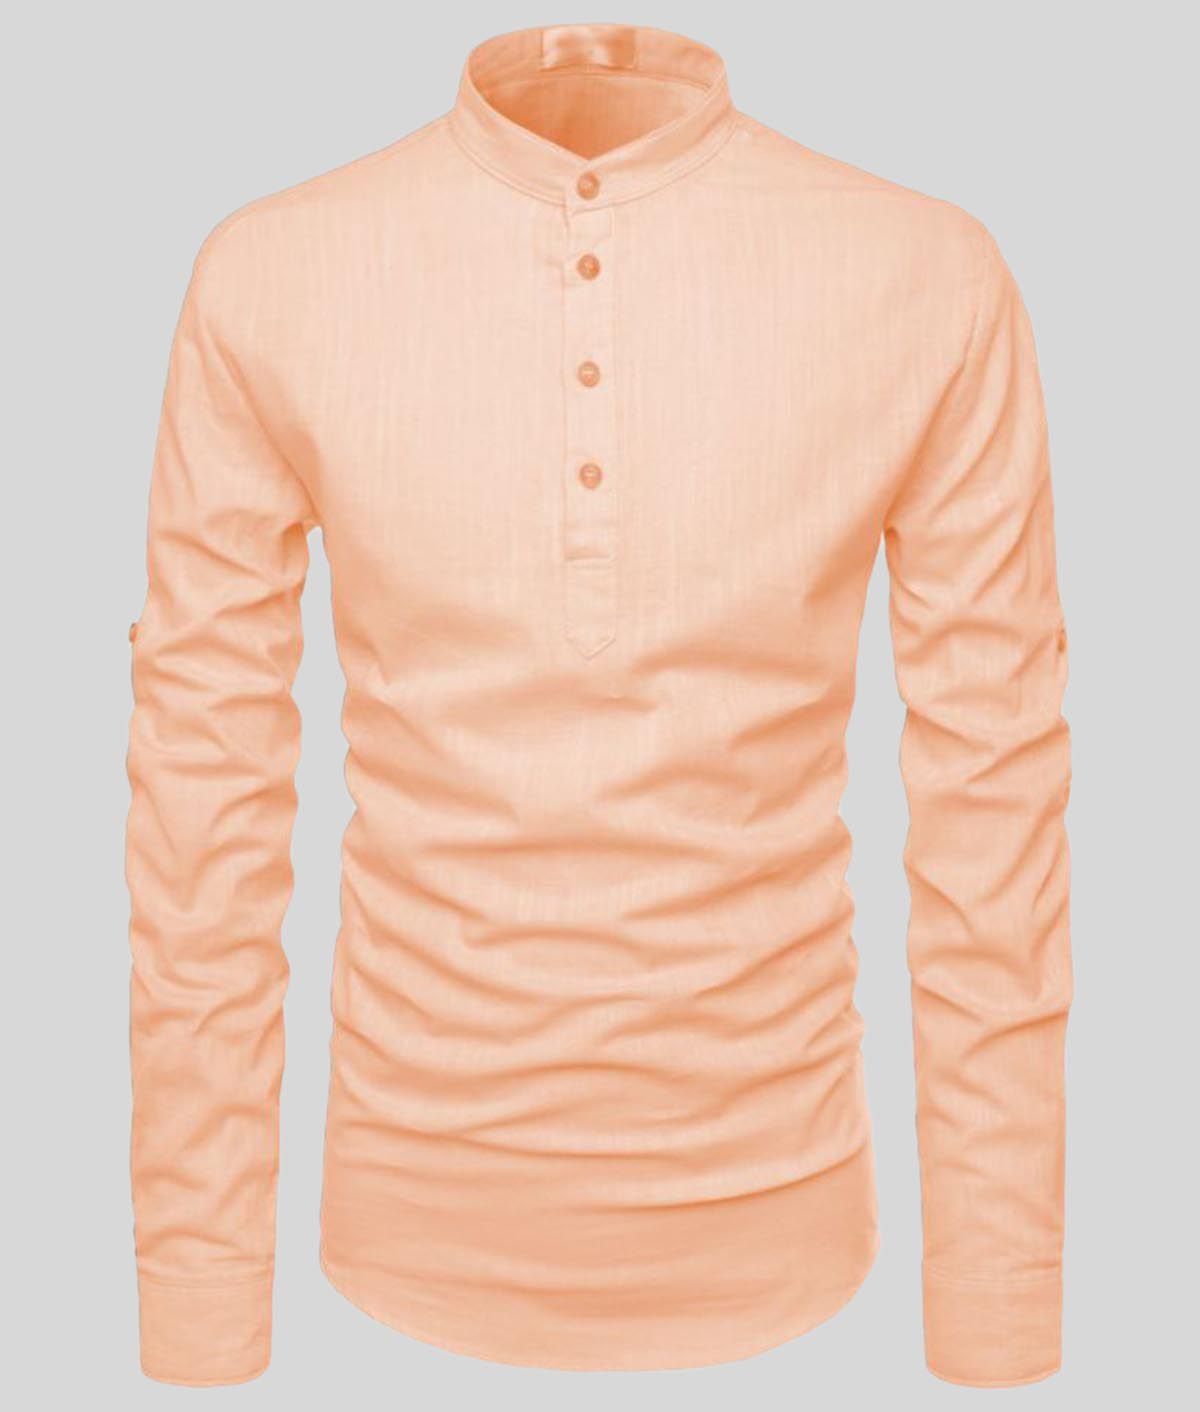     			Vida Loca - Orange Cotton Slim Fit Men's Casual Shirt (Pack of 1 )